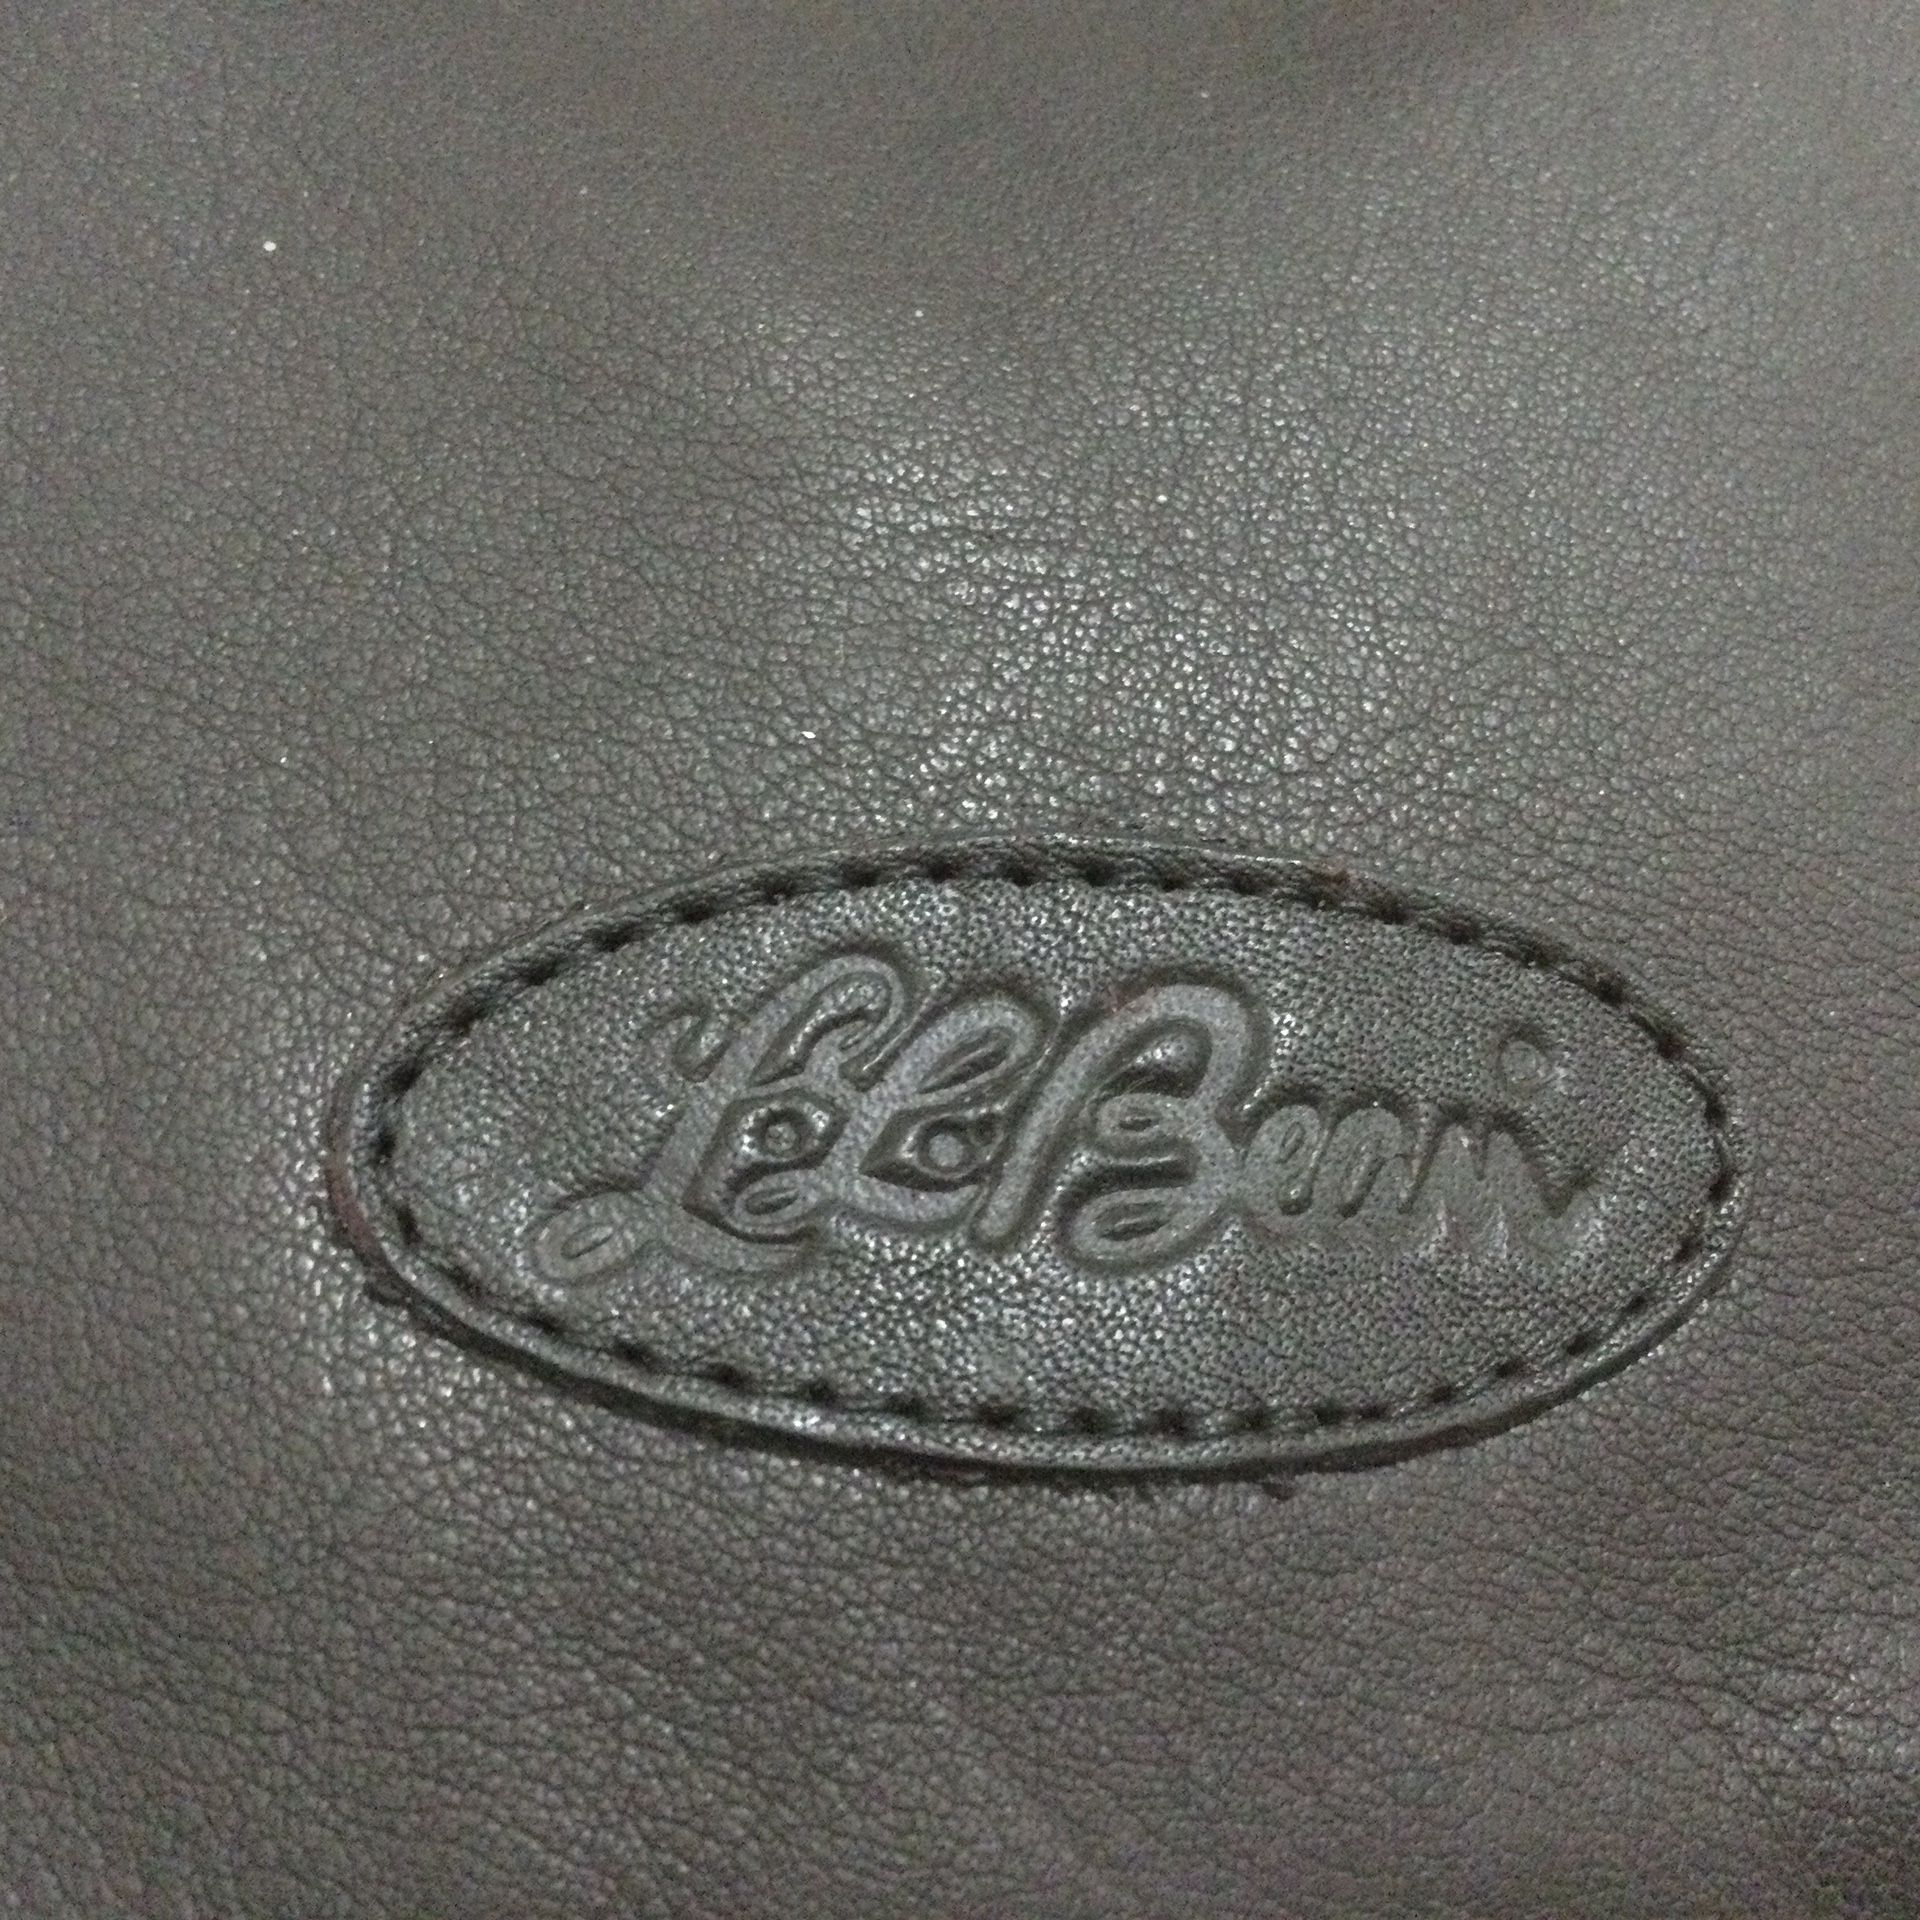 L.L. Bean Black Leather Backpack - Vintage NOS